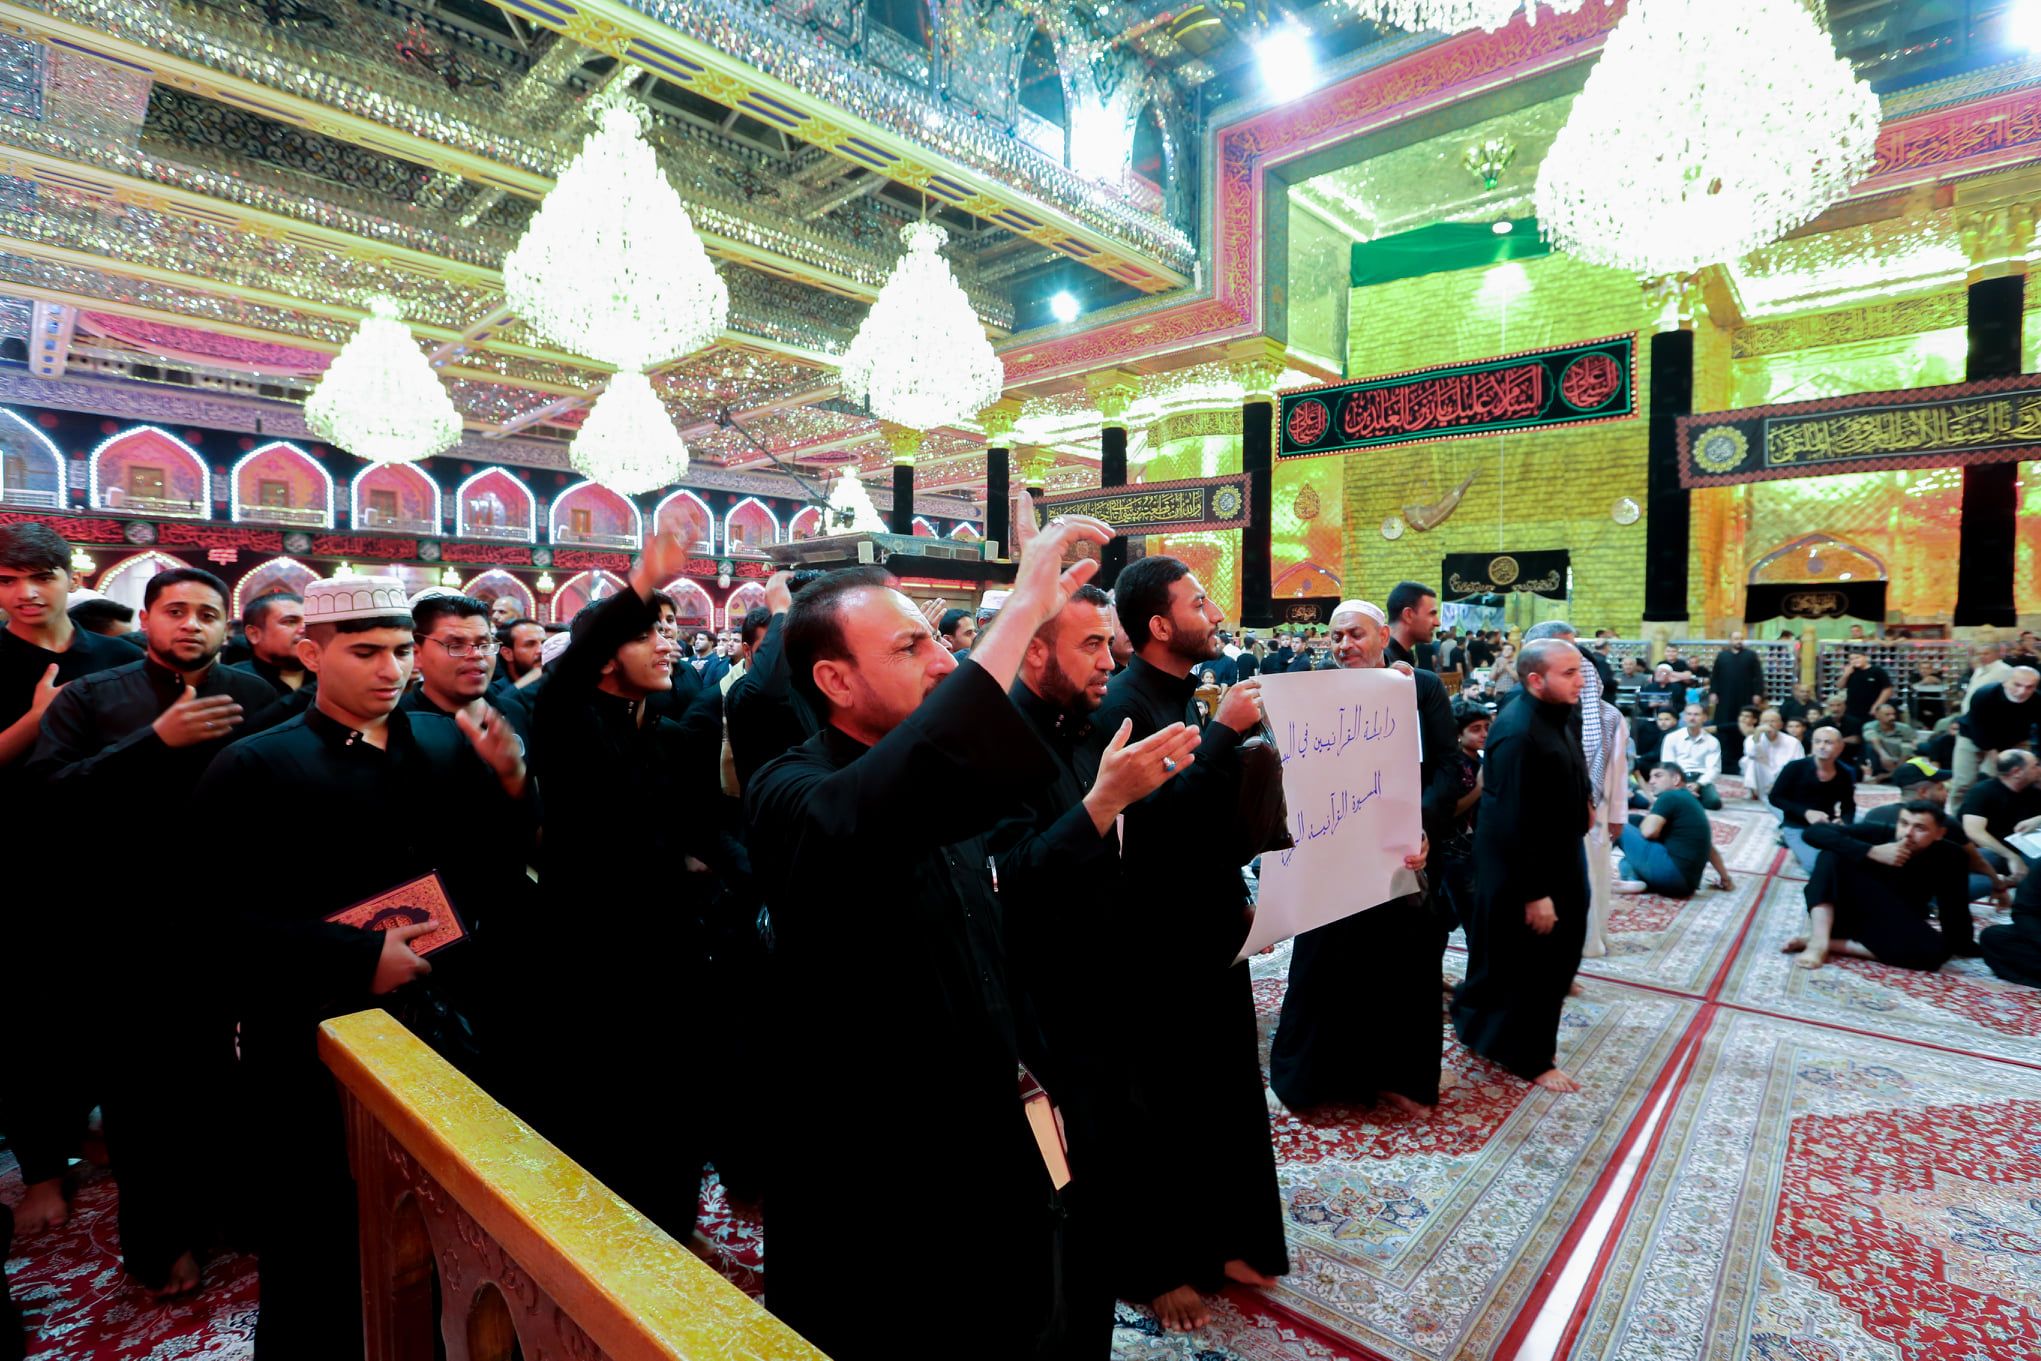 معهد القرآن الكريم يقيم أمسية قرآنية بمشاركة اتحاد الروابط والتجمعات القرآنية في العراق